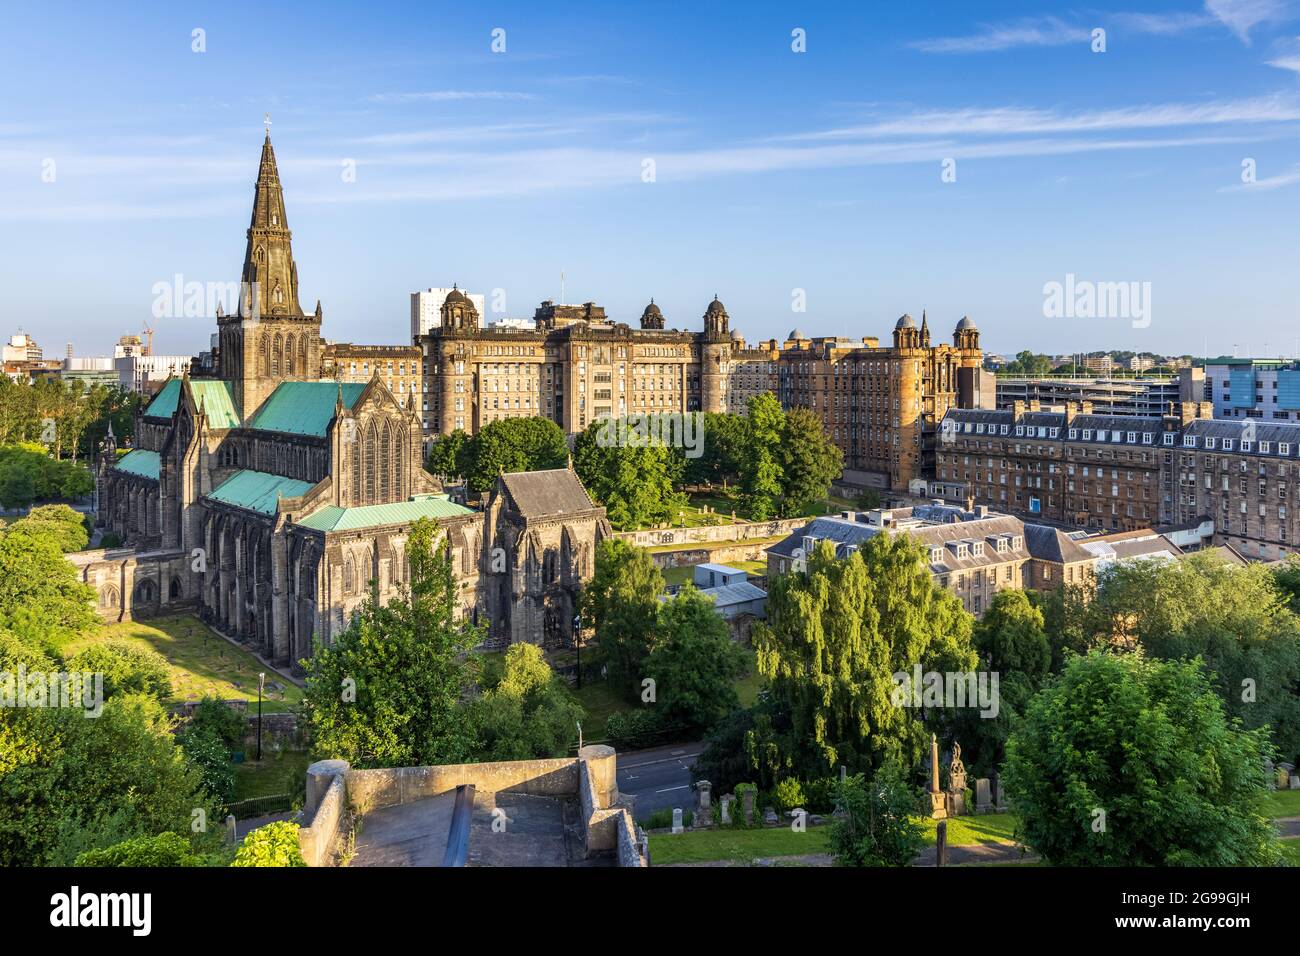 La cathédrale de Glasgow, la plus ancienne cathédrale de l'Écosse continentale, et l'ancienne infirmerie royale, extraite du cimetière victorien de Nacropolis. Banque D'Images